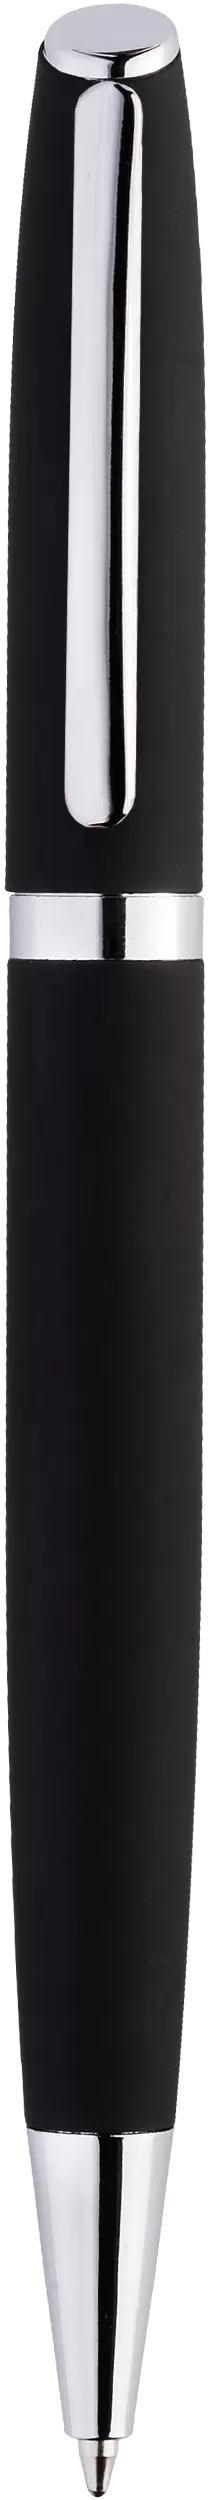 Ручка VESTA SOFT Черная 1121-08